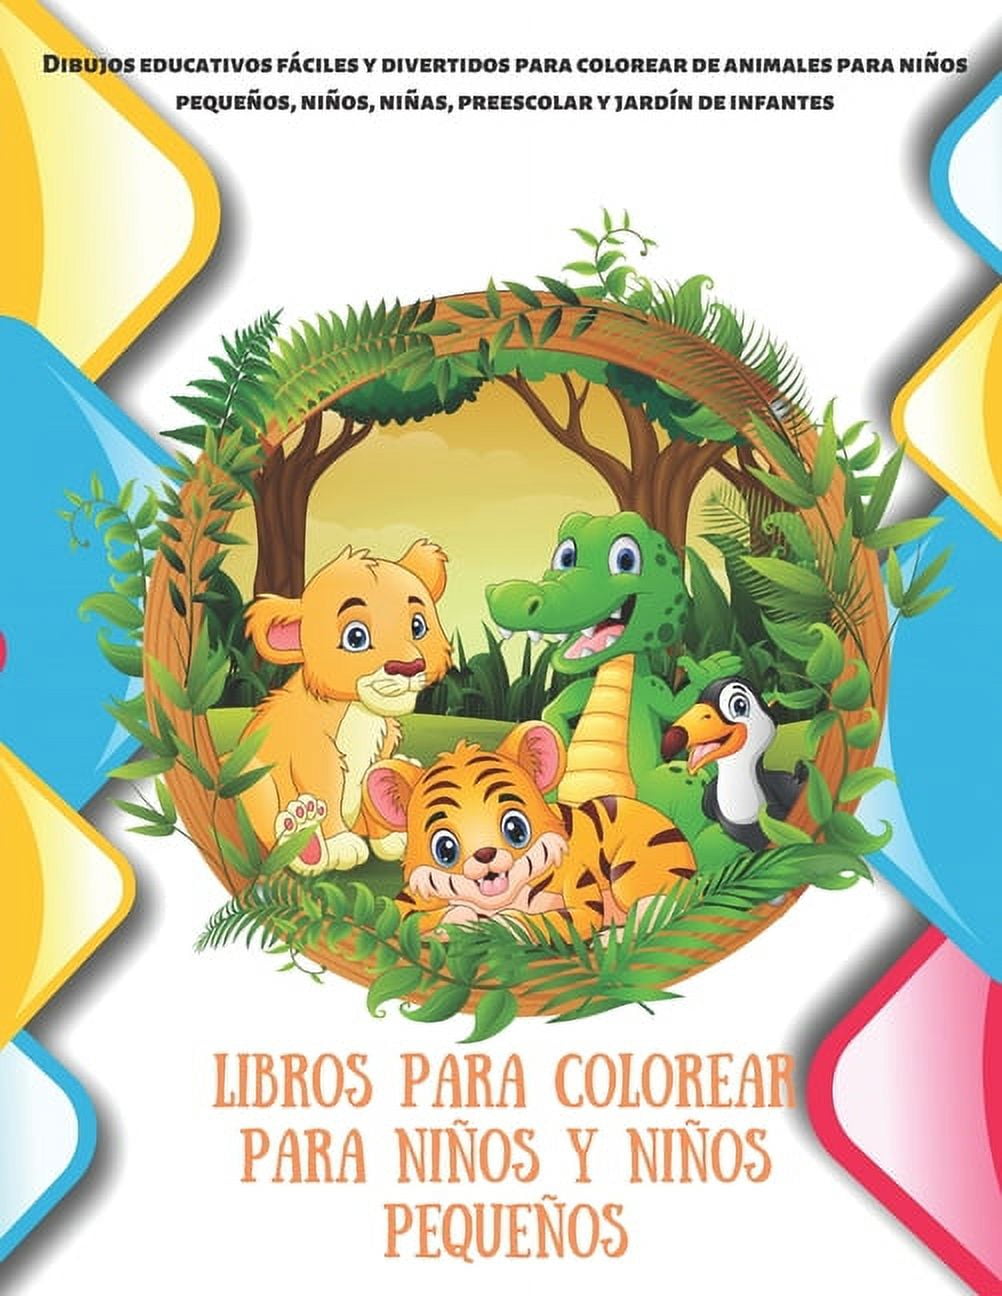 Libros para colorear para niños y niños pequeños - Dibujos educativos  fáciles y divertidos para colorear de animales para niños pequeños, niños,  niñas, preescolar y jardín de infantes (Paperback) 